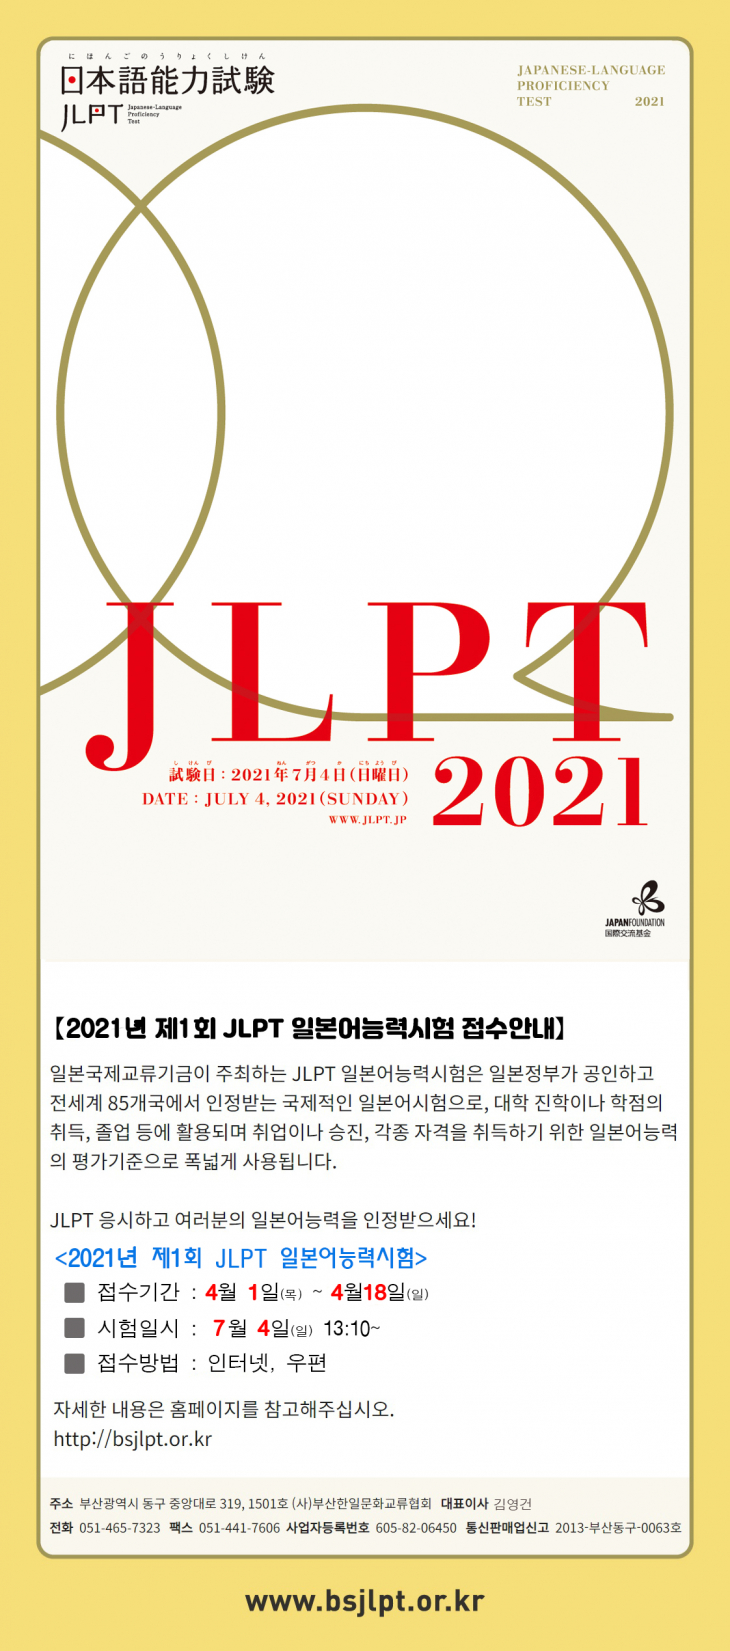 2021년 제1회 JLPT 일본어능력시험 안내문